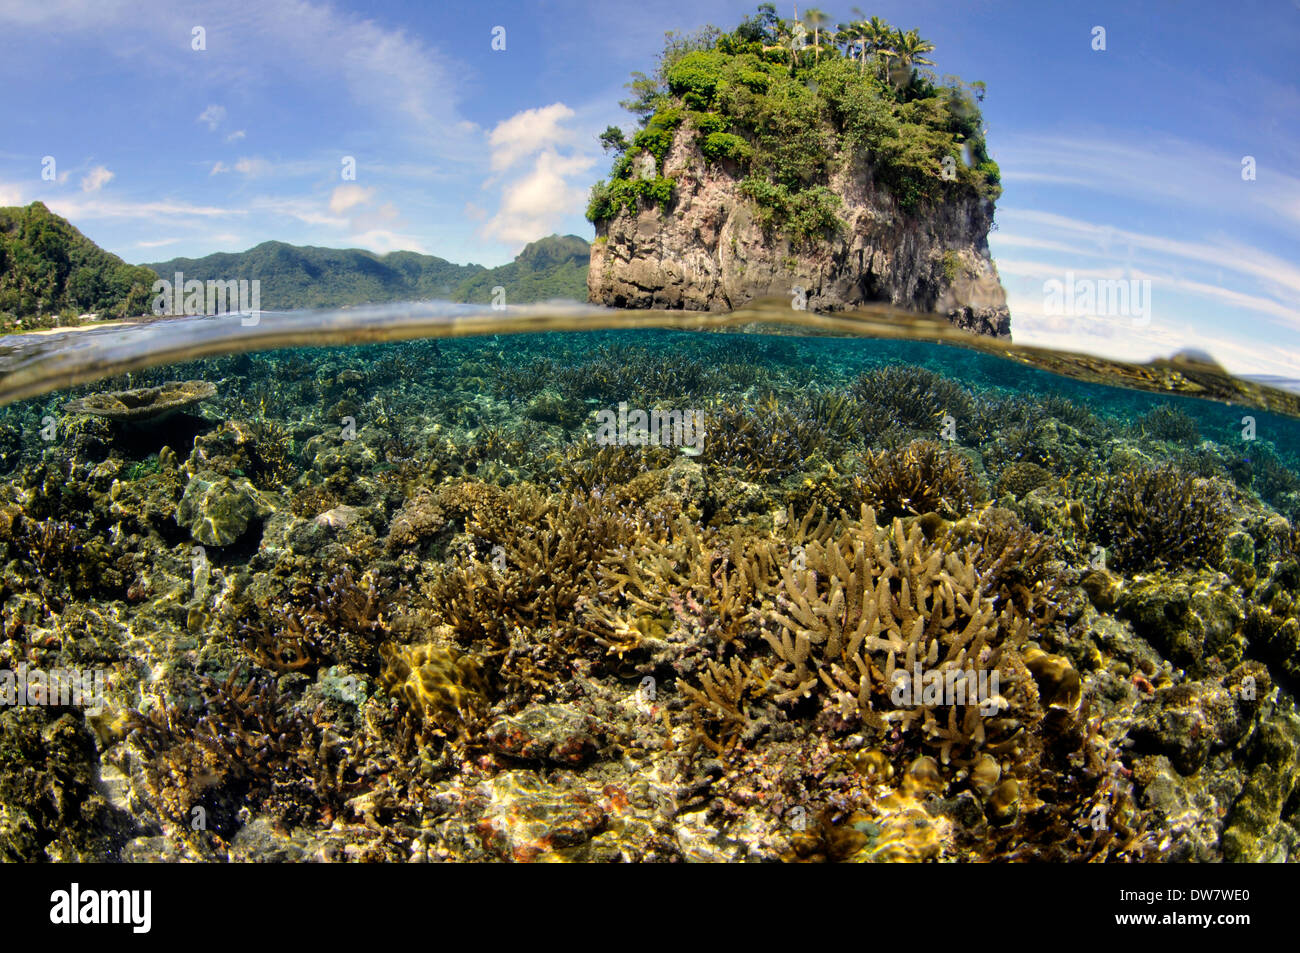 Les récifs coralliens peu profonds avec plusieurs espèces d'Acropora, Fagaalu Bay et Flower-pot rock, Pago Pago, Tutuila, American Samoa Banque D'Images